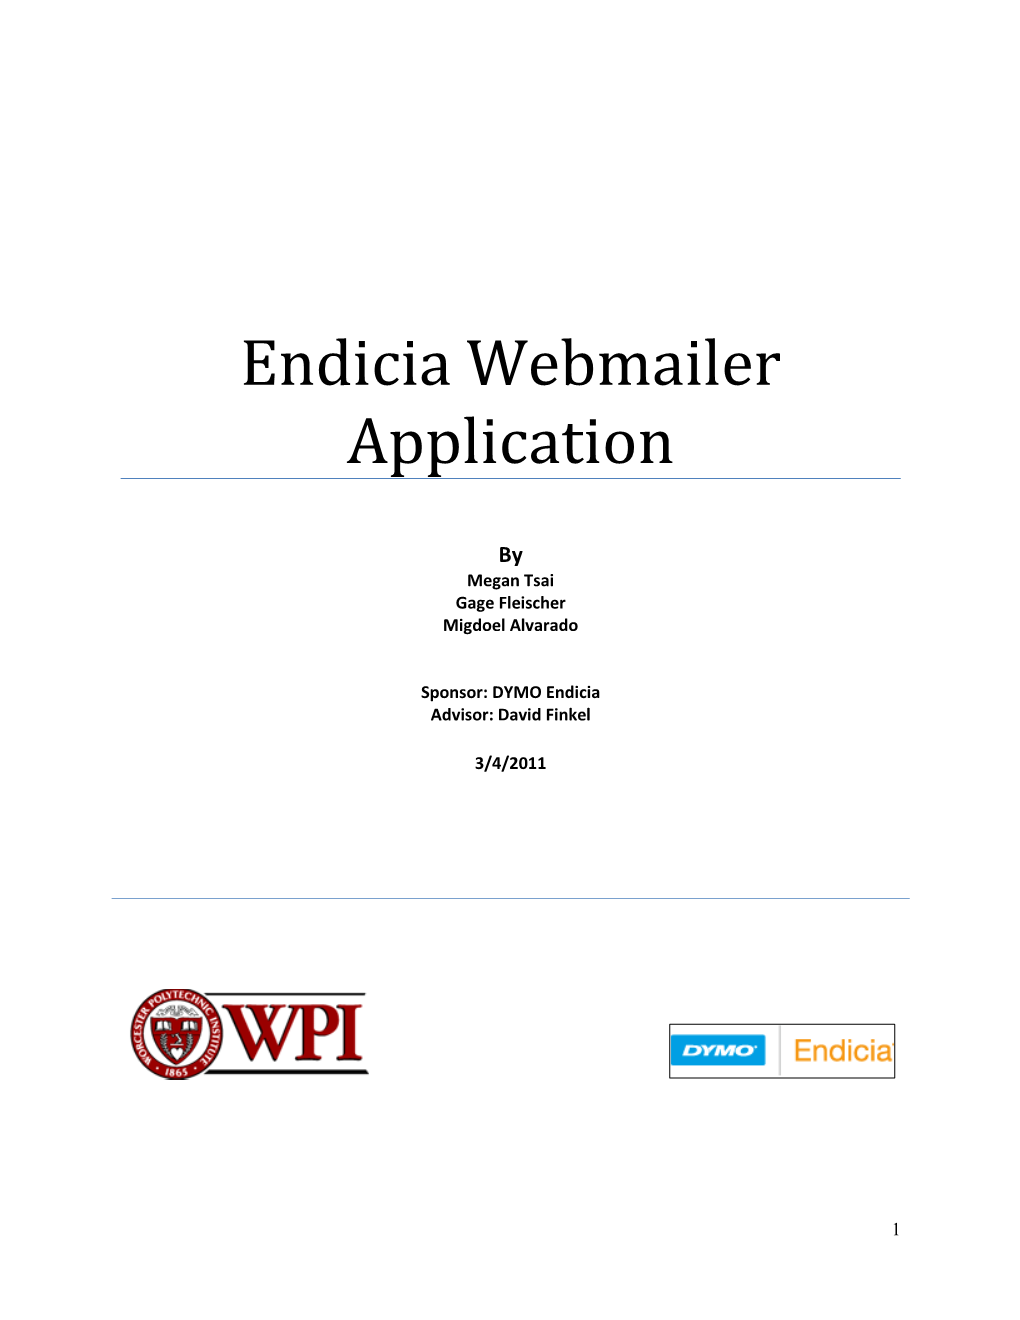 Endicia Webmailer Application